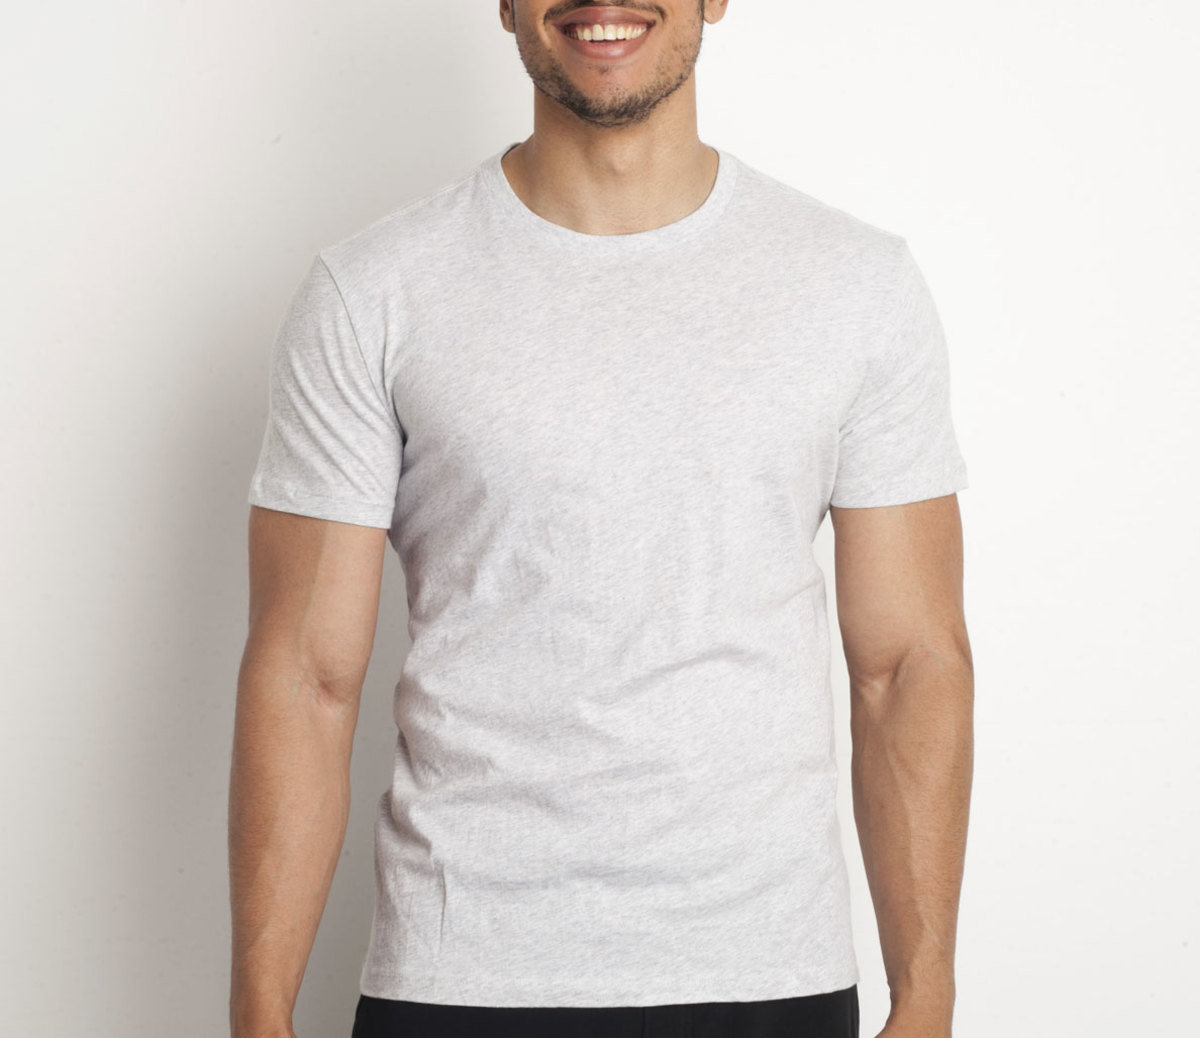  Cute Workout Clothes Men Denim Shirt Men White T